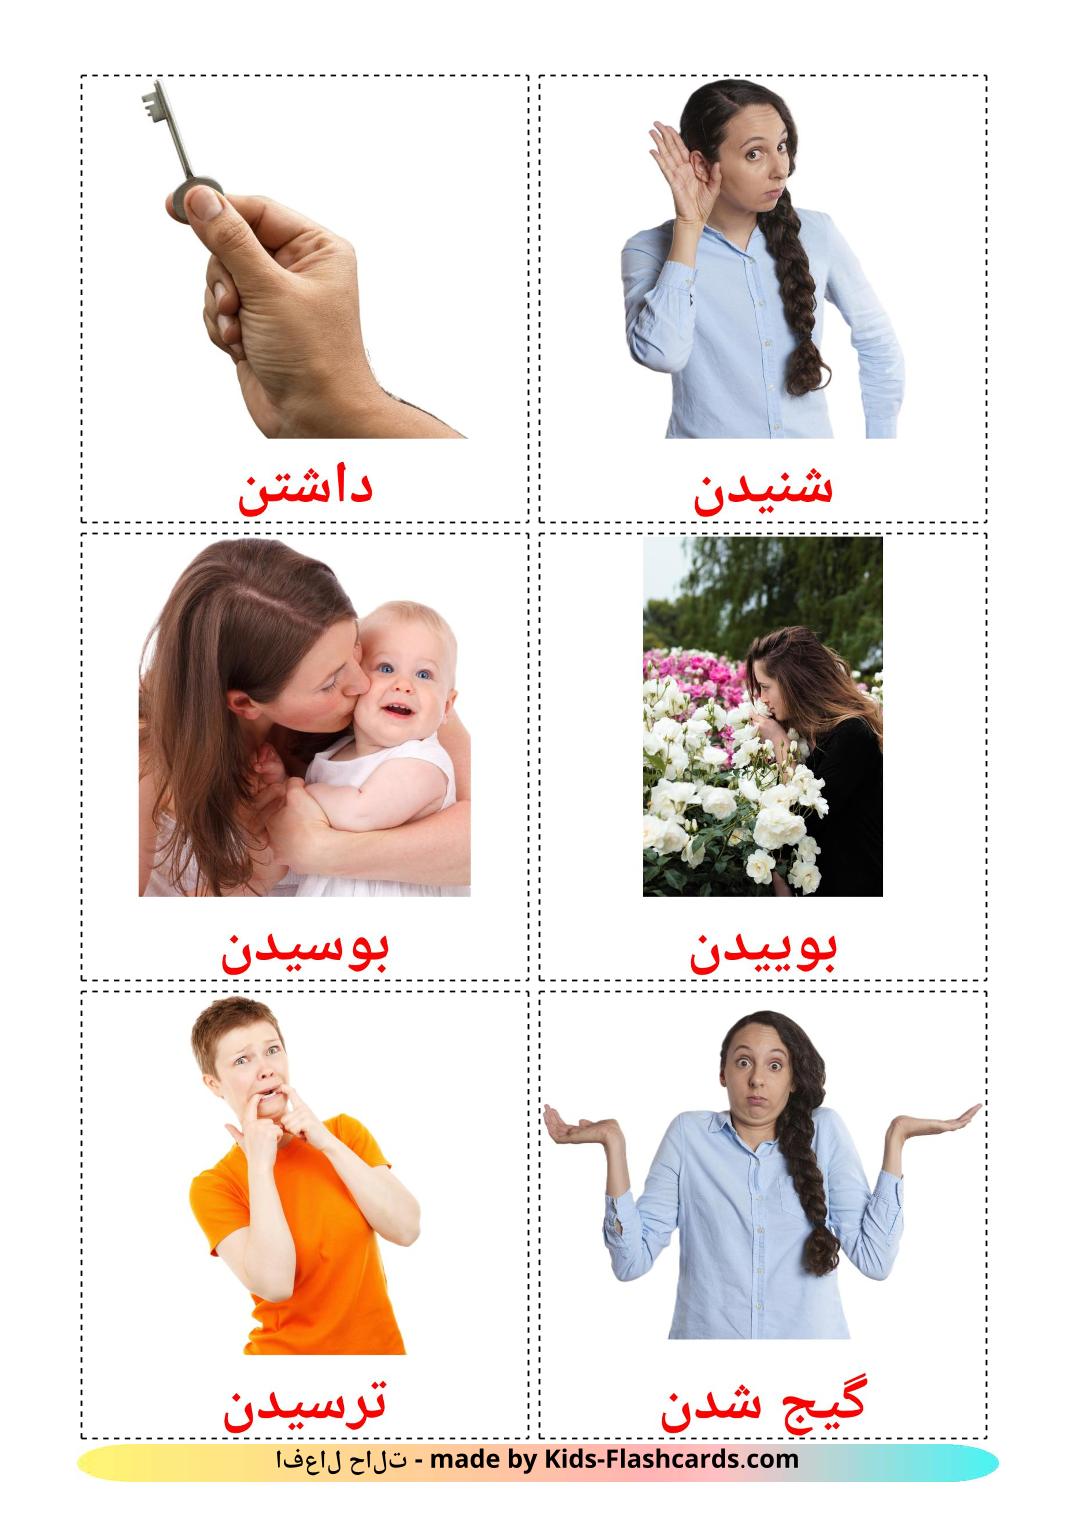 Глаголы состояния - 23 Карточки Домана на персидском